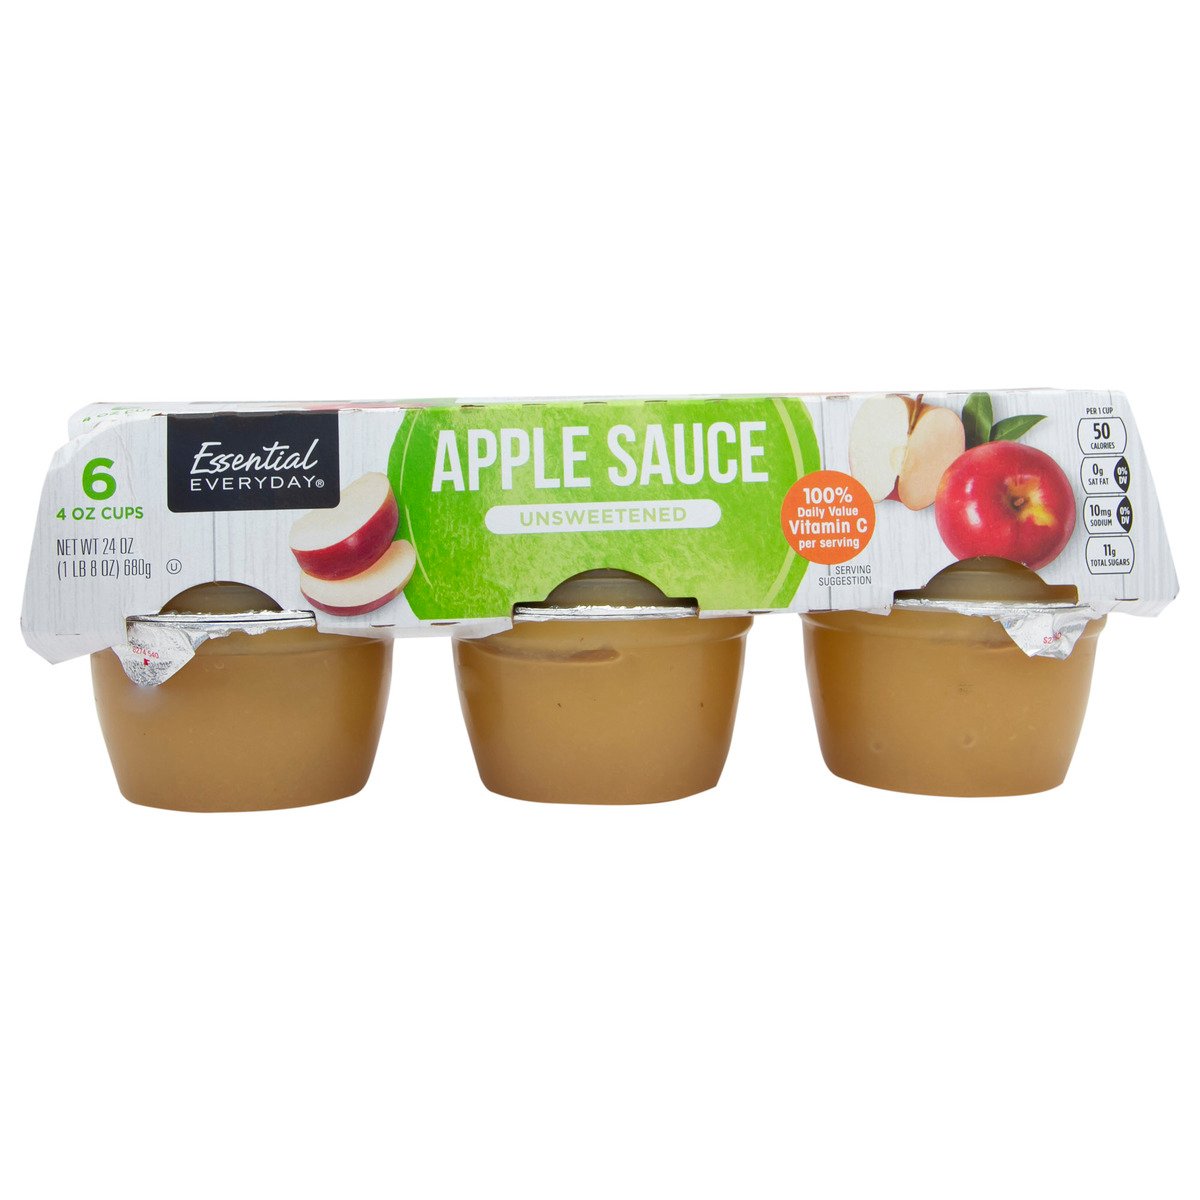 اشتري قم بشراء ايسينشال ايفري داي صلصة التفاح غير محلاة ٦٨٠ جم Online at Best Price من الموقع - من لولو هايبر ماركت Sauces في السعودية